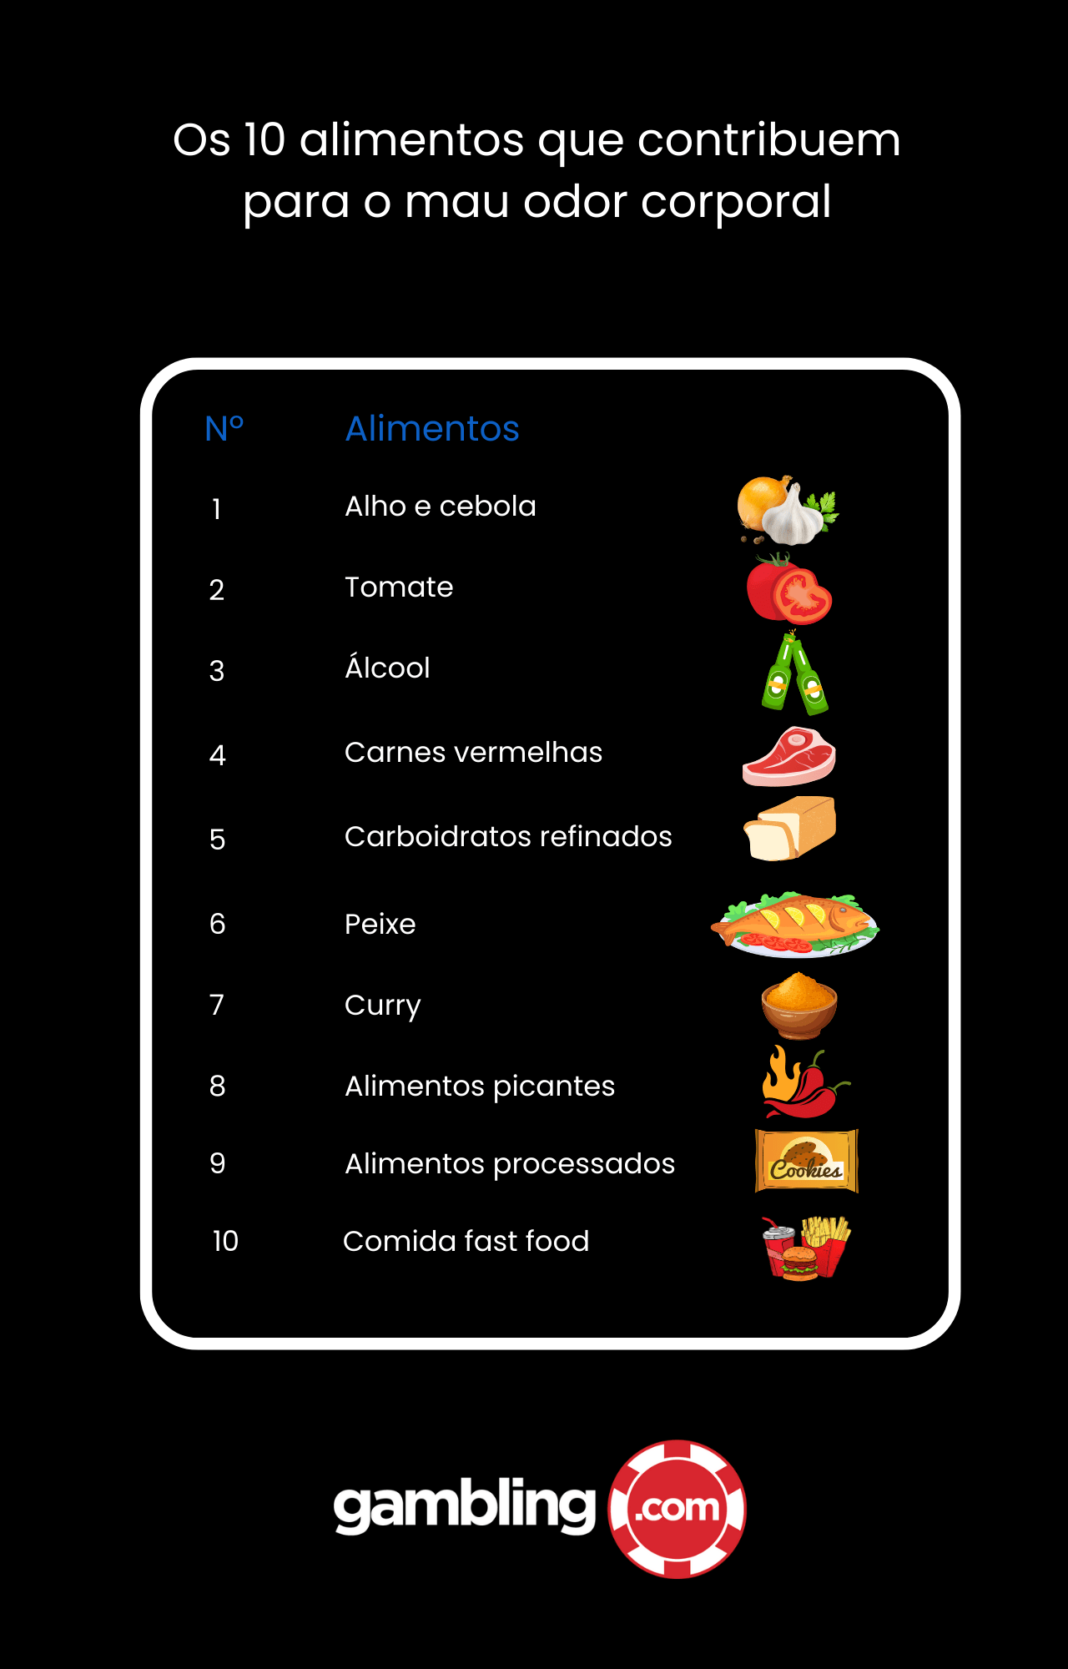 Aqui estão os 10 alimentos que contribuem para o mau odor corporal